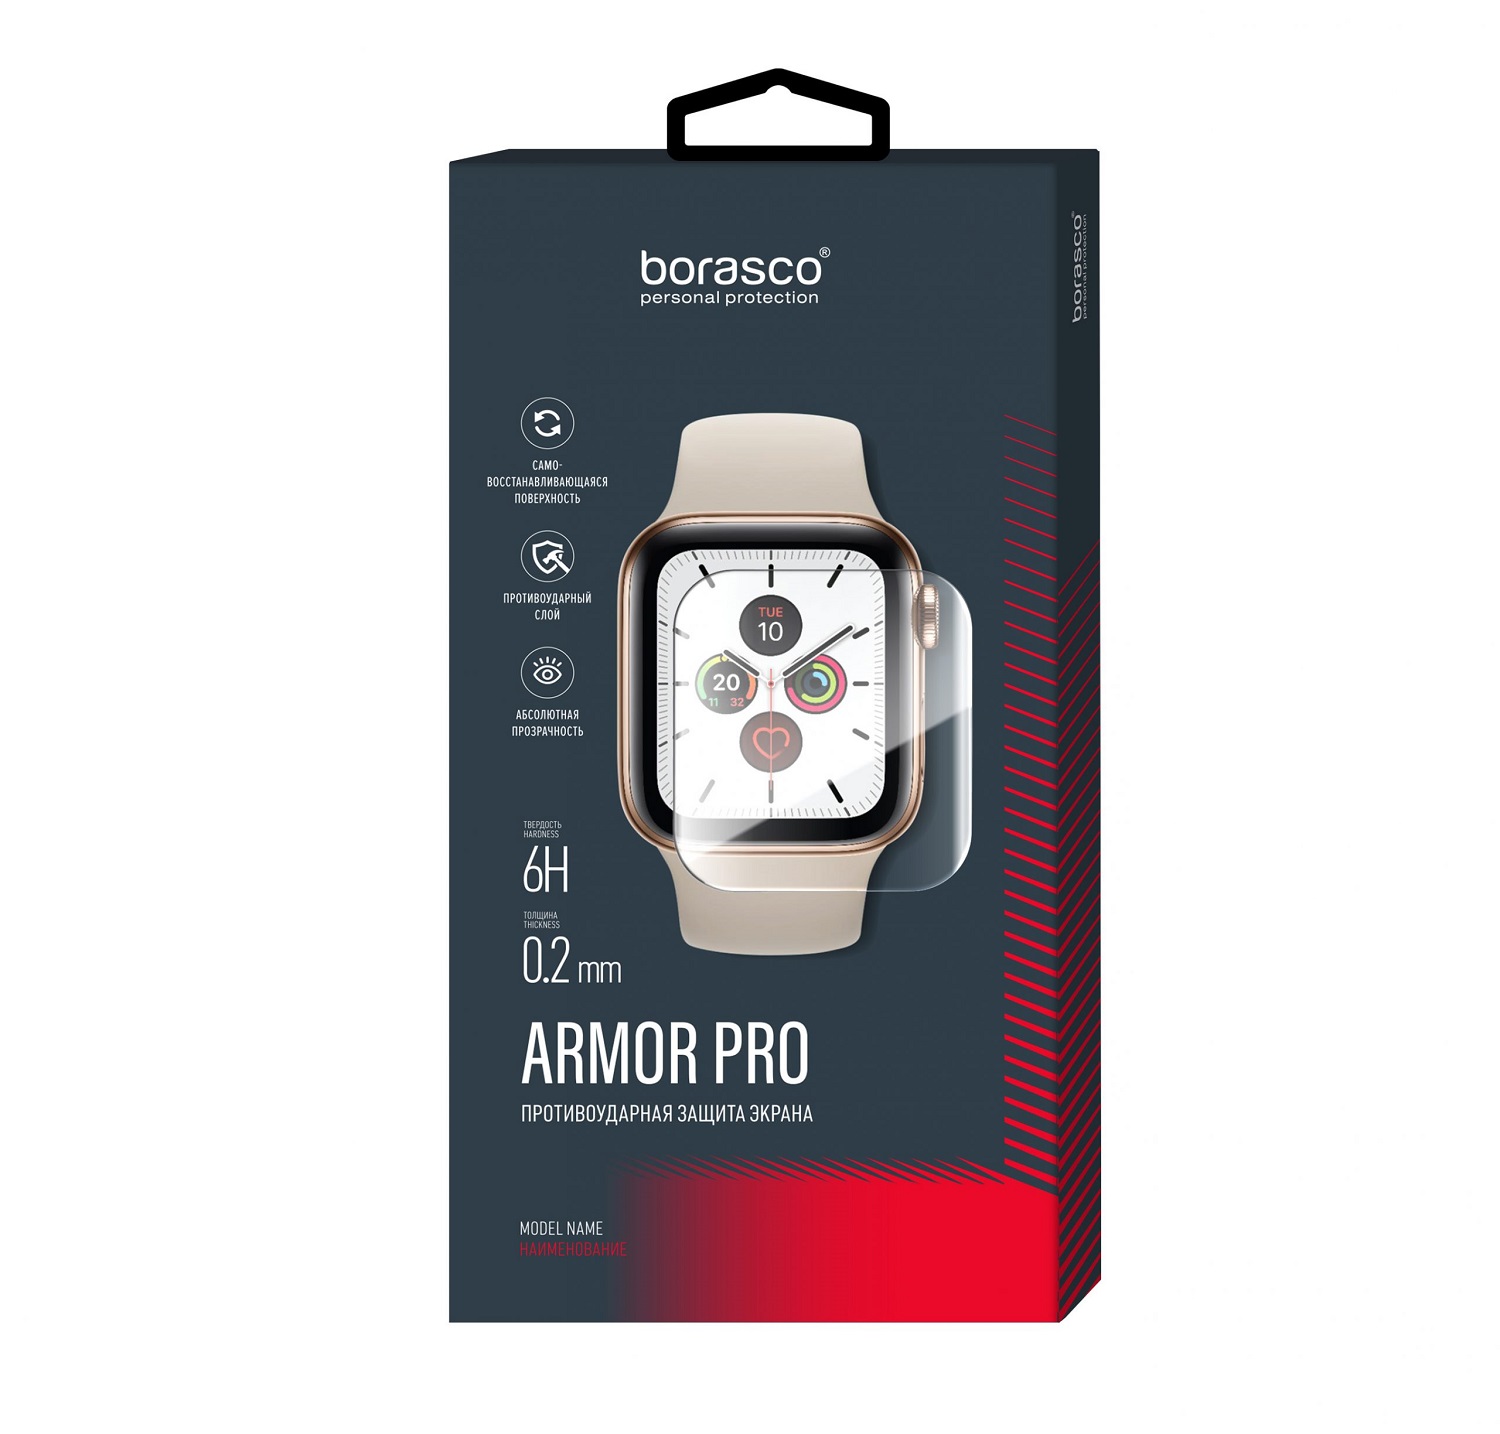 Защита экрана BoraSCO Armor Pro для Huawei Watch fit защита экрана borasco armor pro для amazfit bip